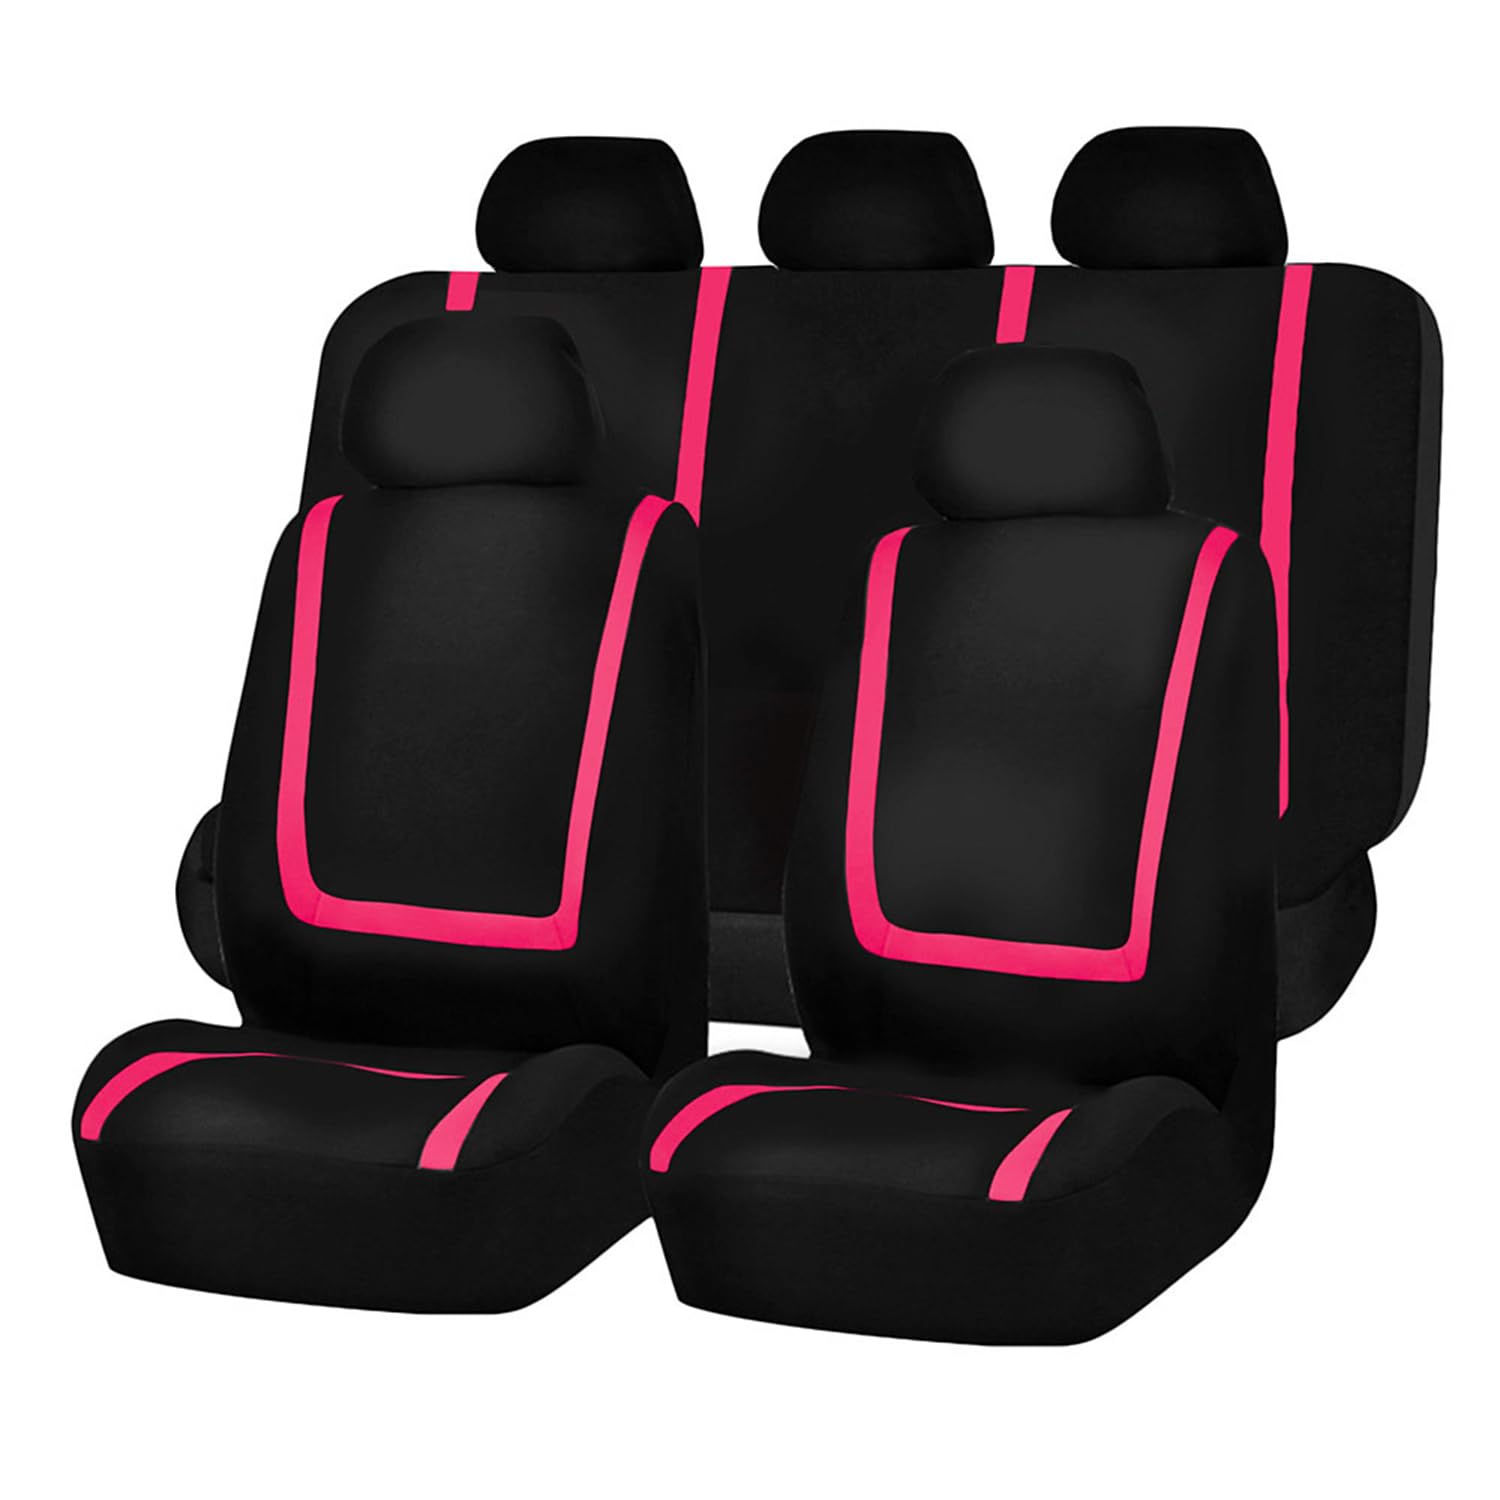 BUNIQ Car Seat Covers Car Seat Cover for Ford Focus MK2 2004-2011,Four Seasons Breathable Seat Protection Interior Accessories,E-Black pink von BUNIQ